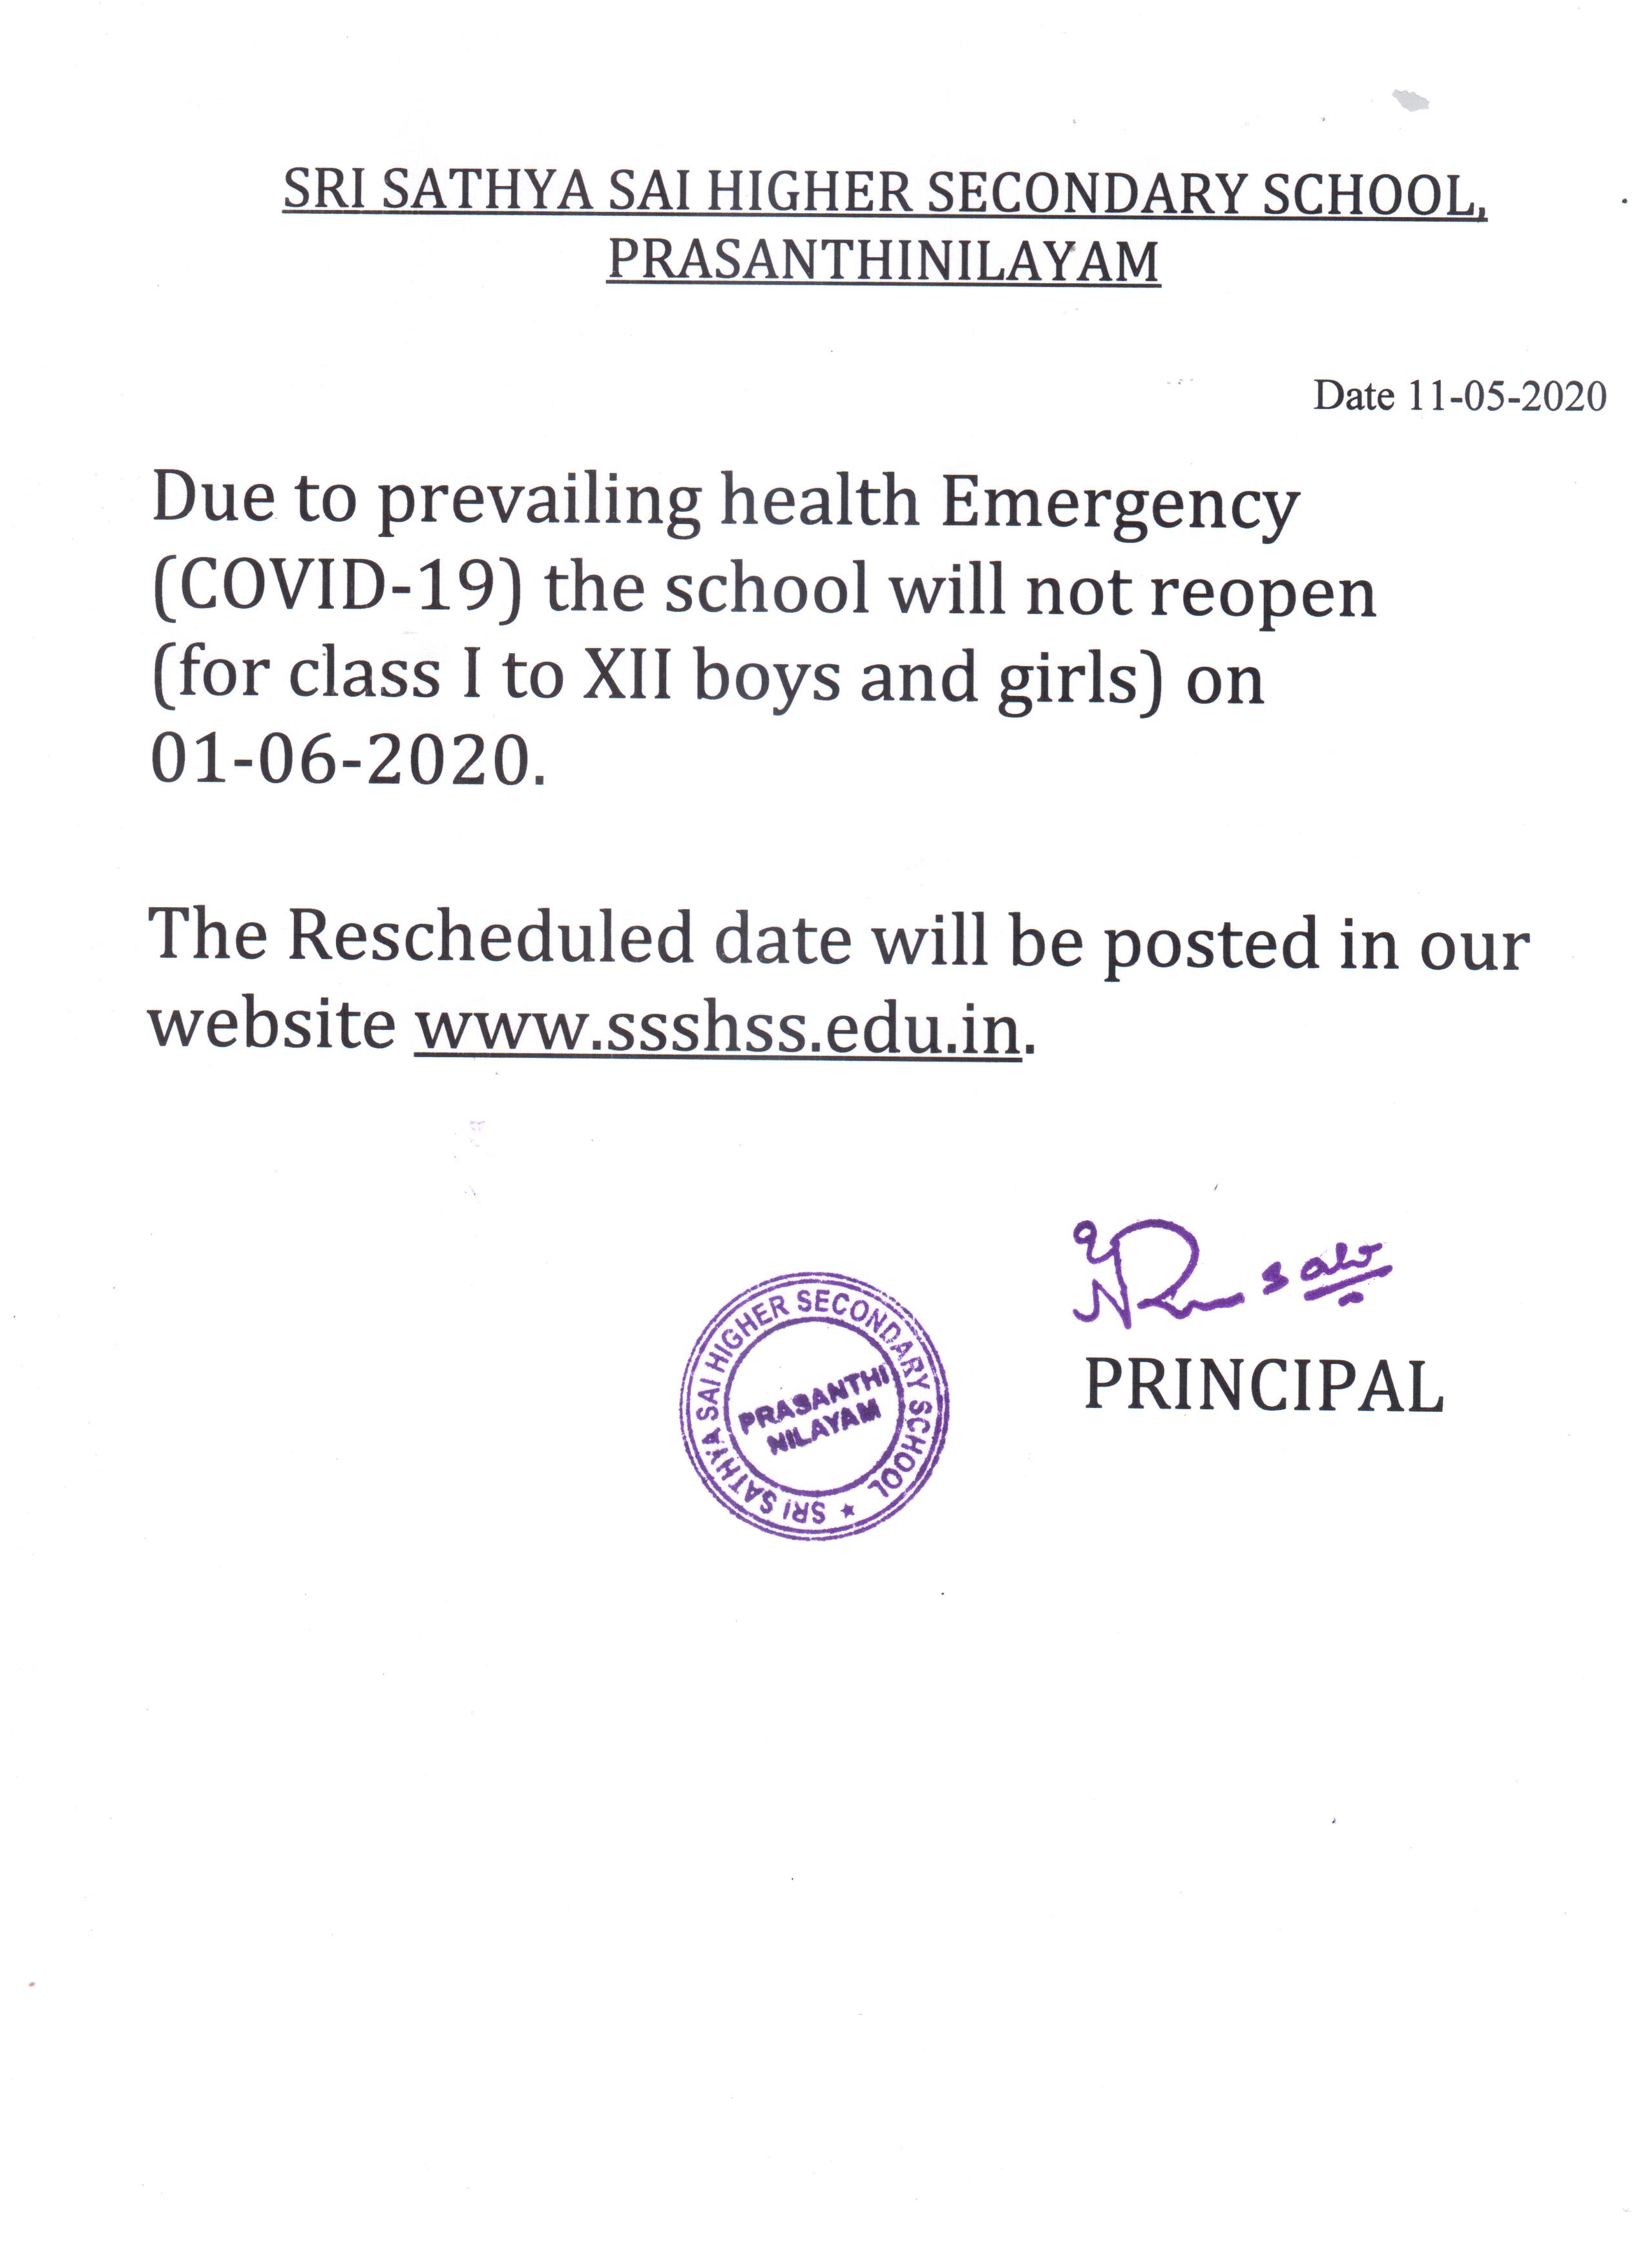 school opening date rescheduled